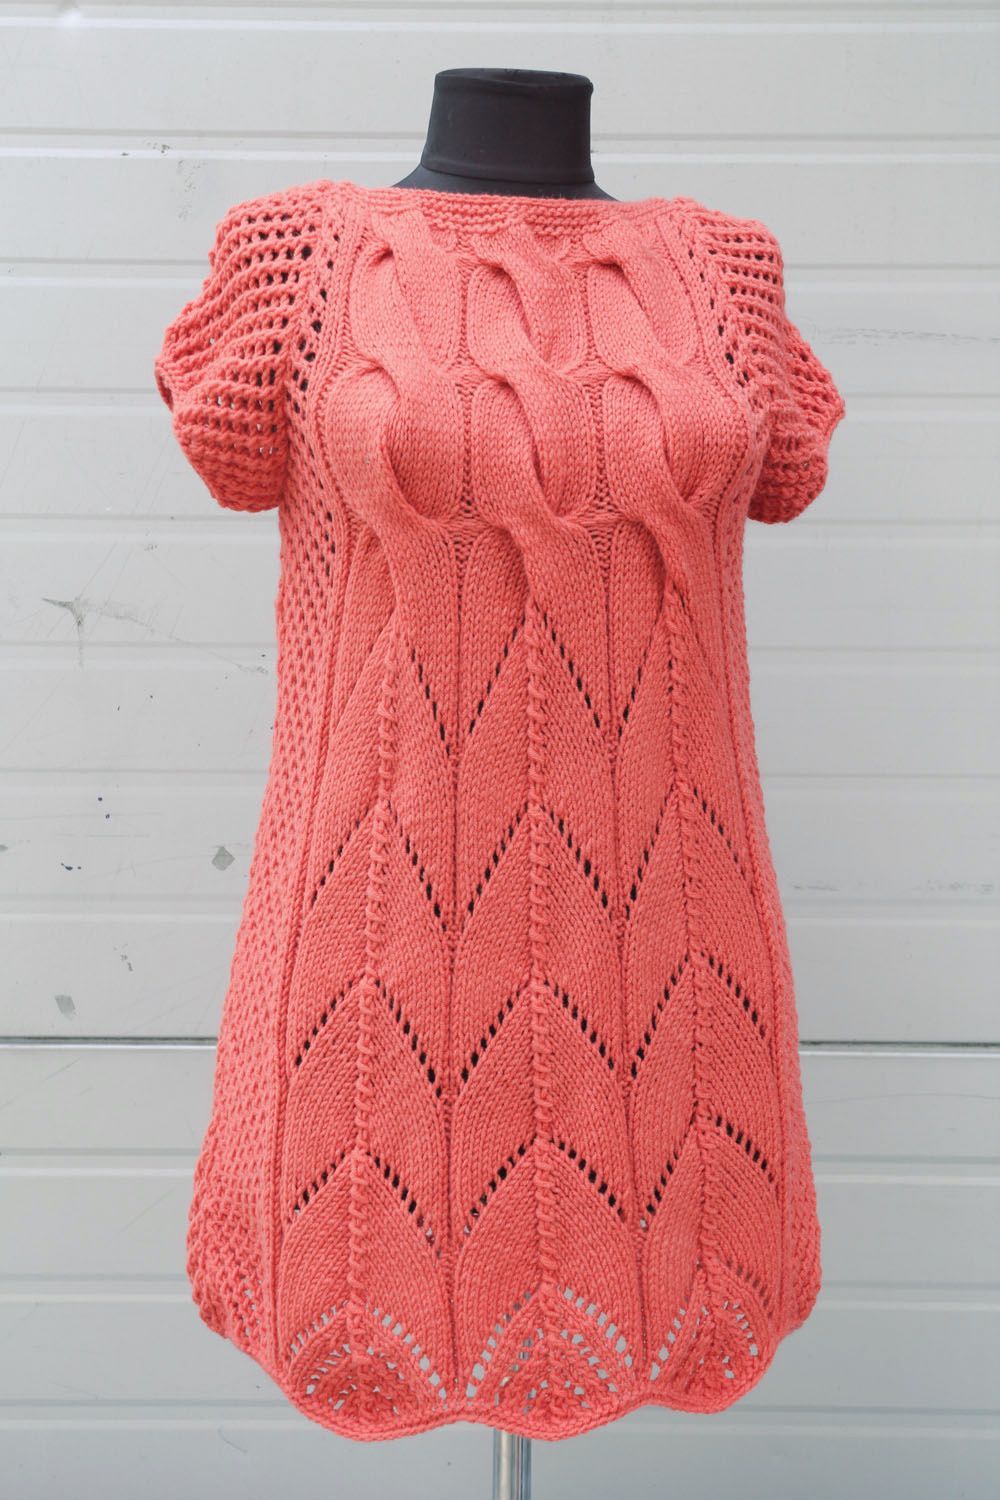 Robe tunique tricotée main corail photo 1